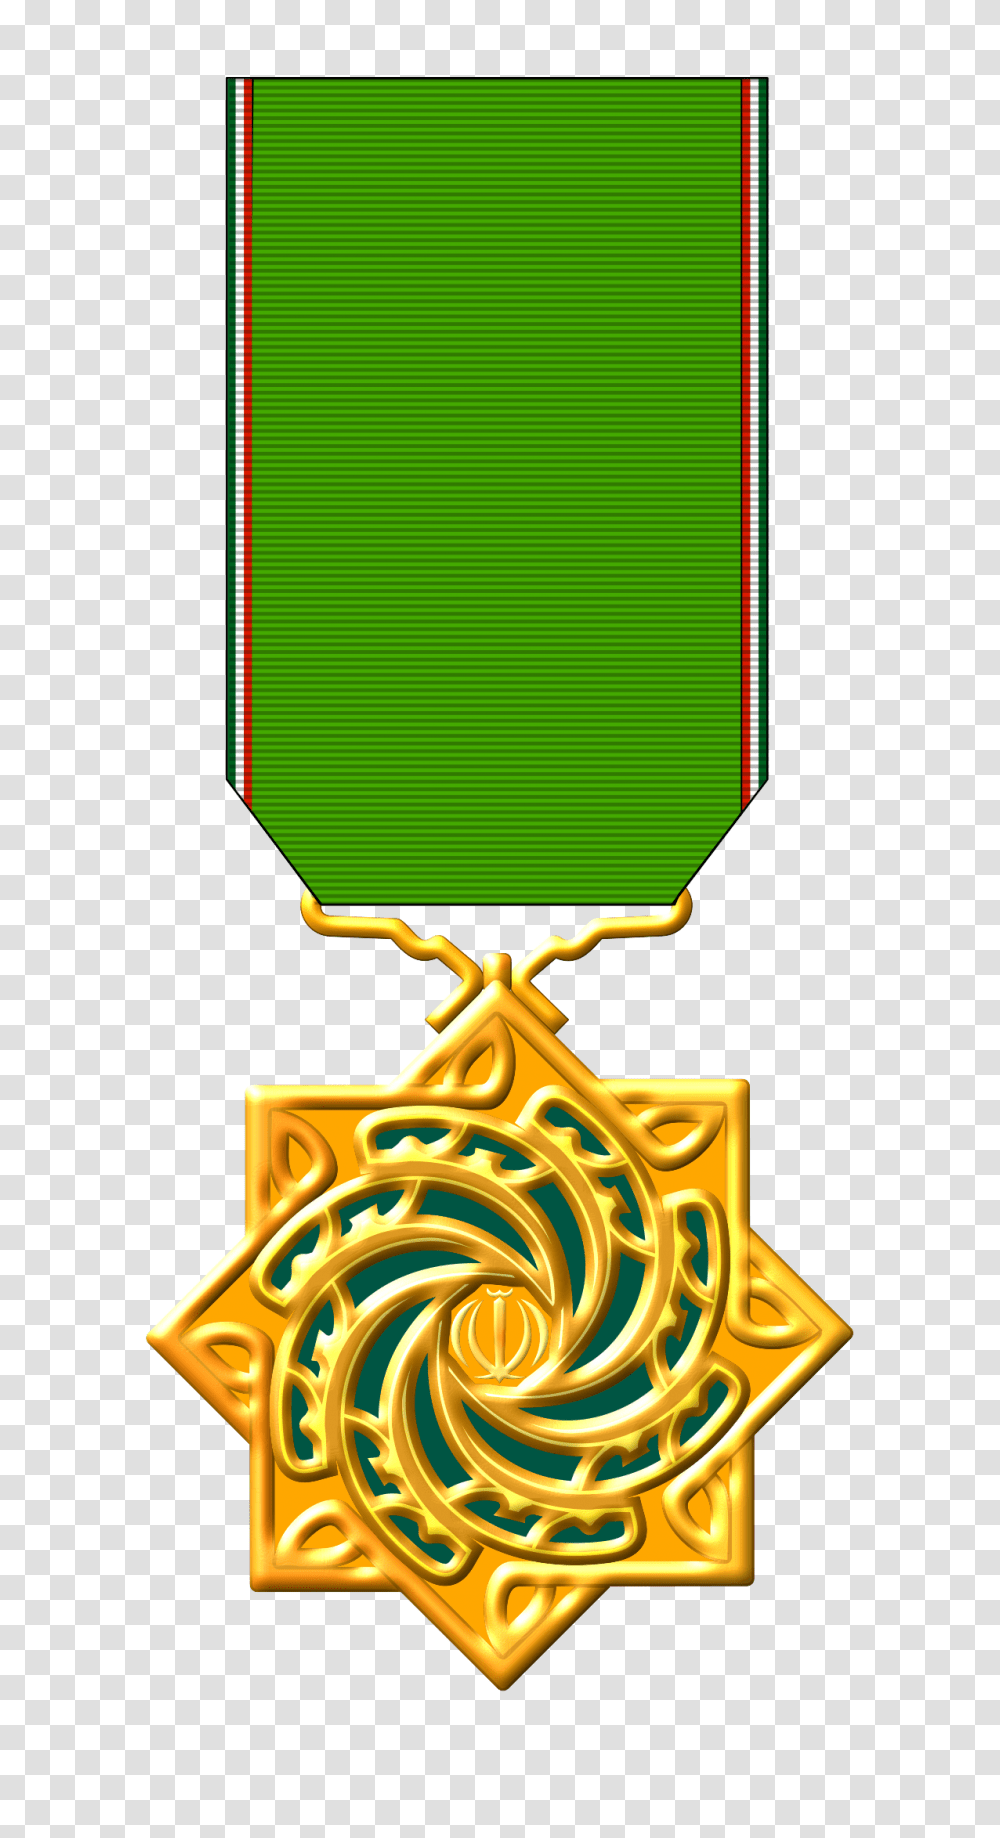 Order Of Merit And Management, Gold, Gold Medal, Trophy, Dynamite Transparent Png